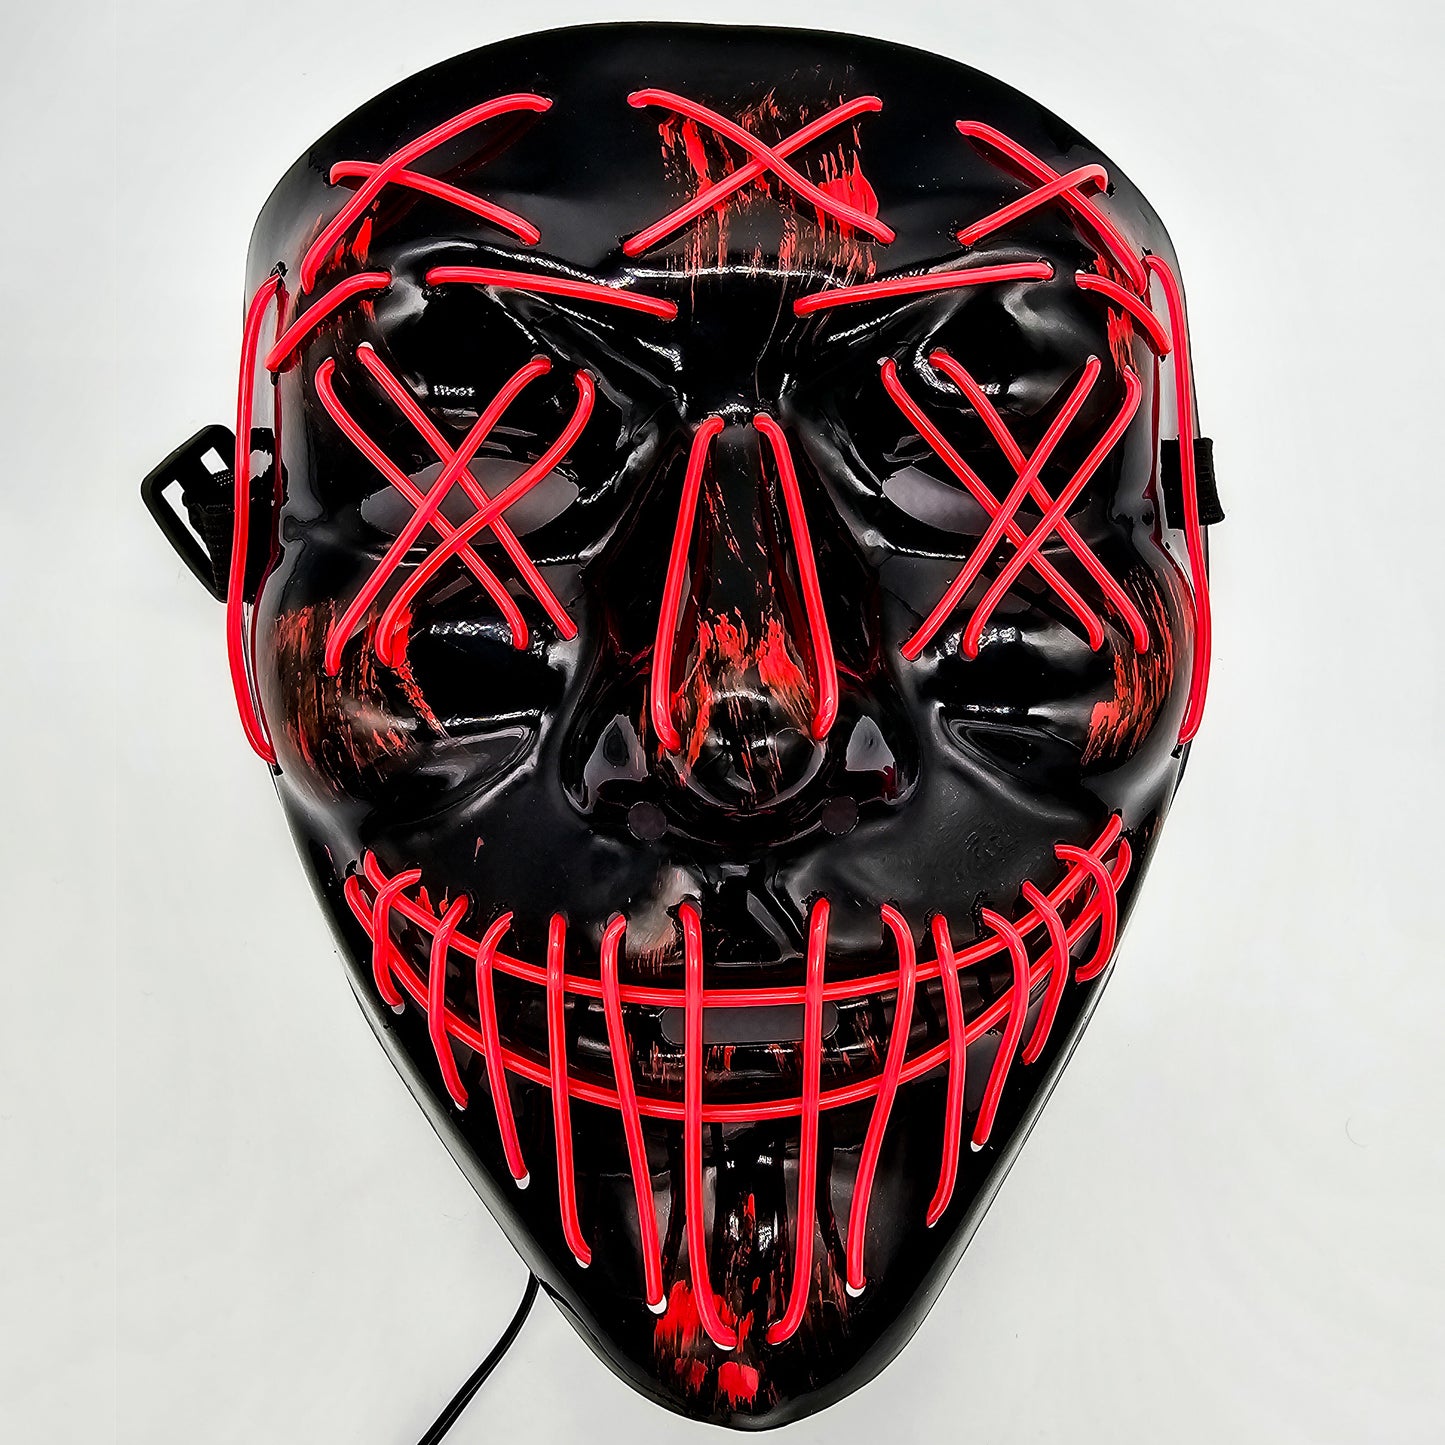 The Purge "Stitches" LED Mask